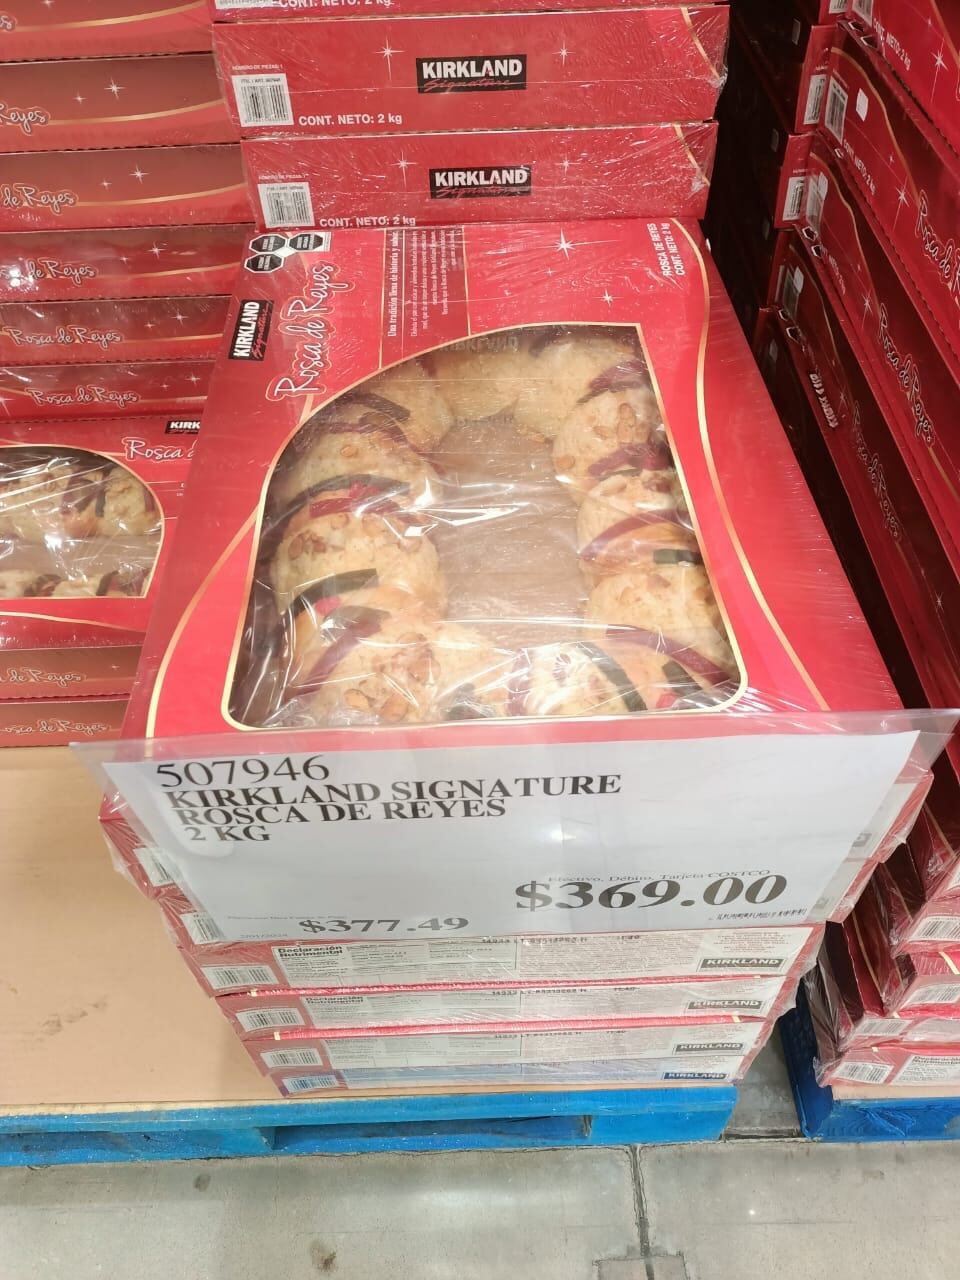 Precios normal de Rosca de Reyes del Costco